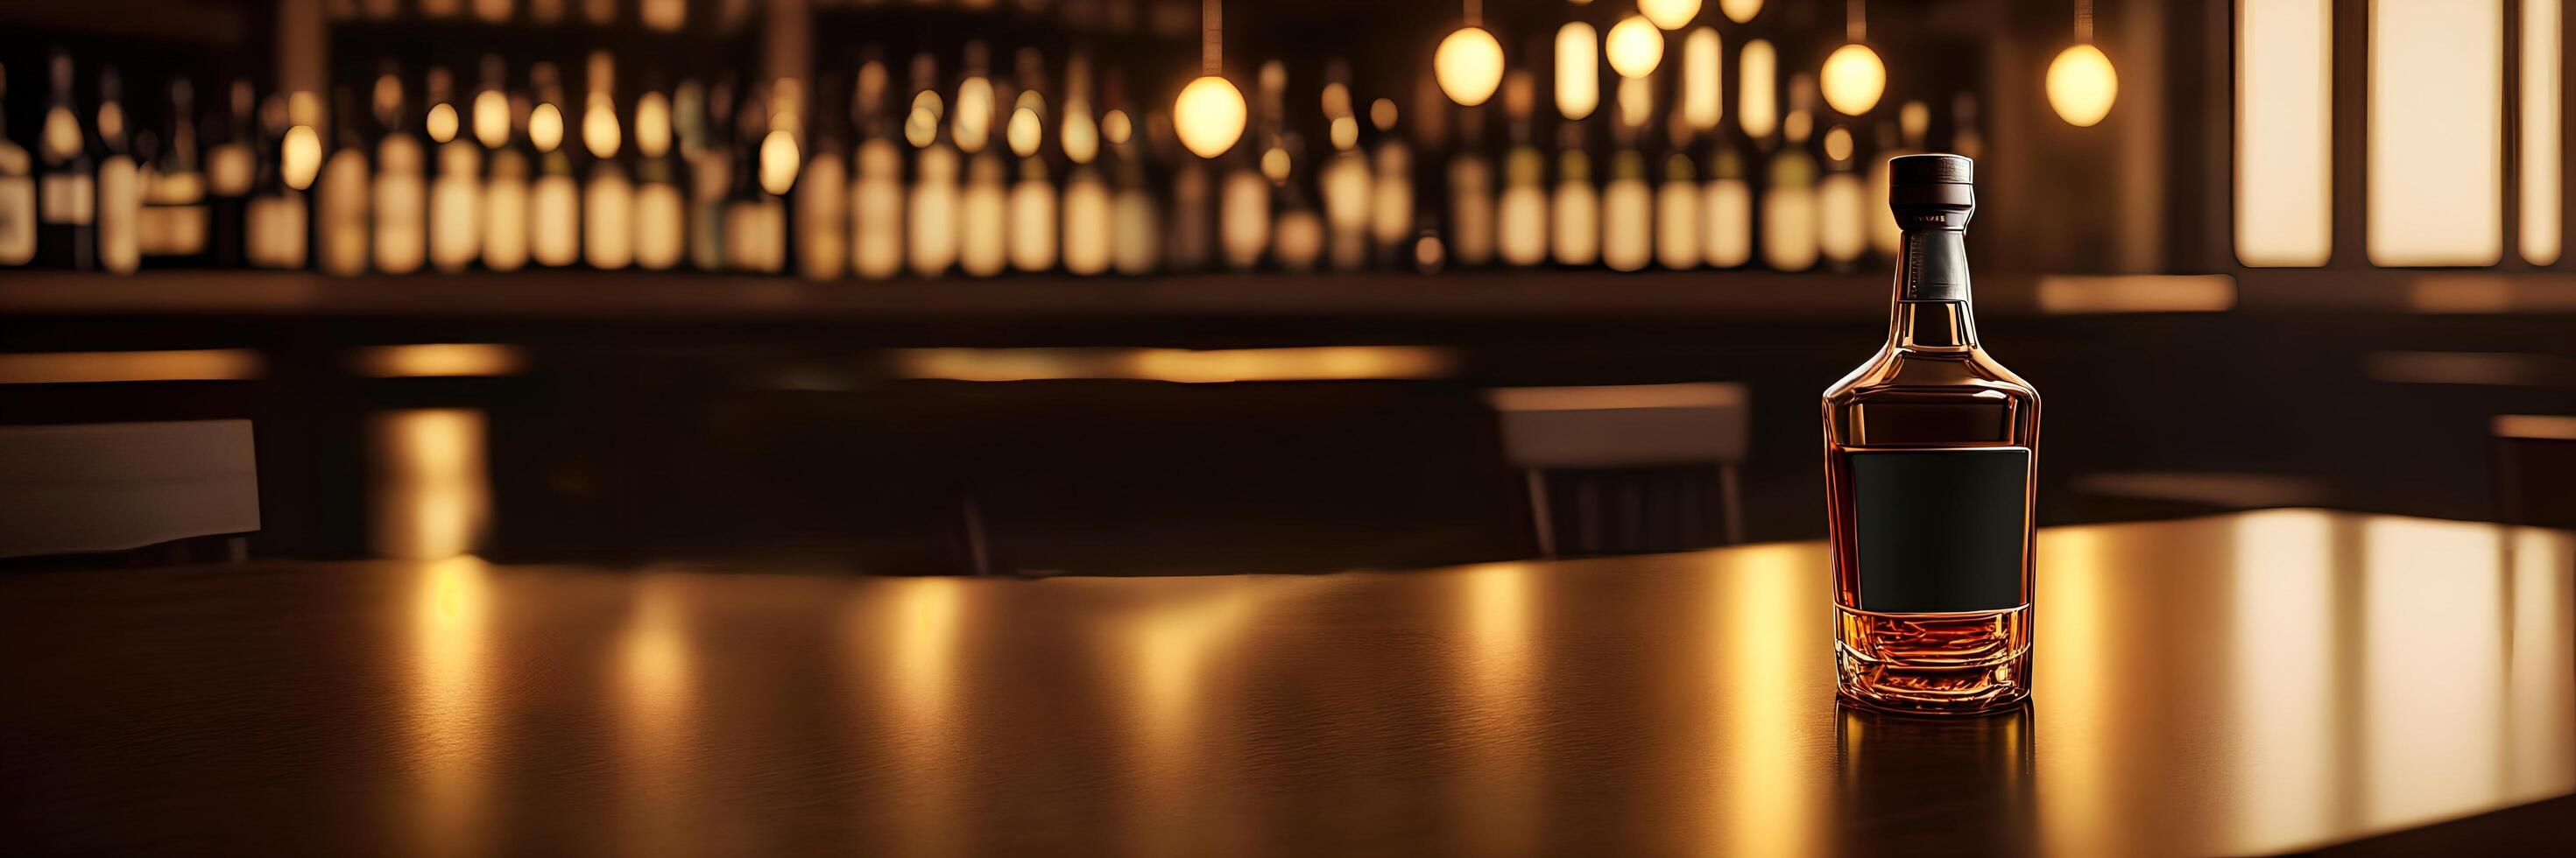 en enda flaska av whisky i rätt hörn av de tabell av de bar, mörk färgad bild foto